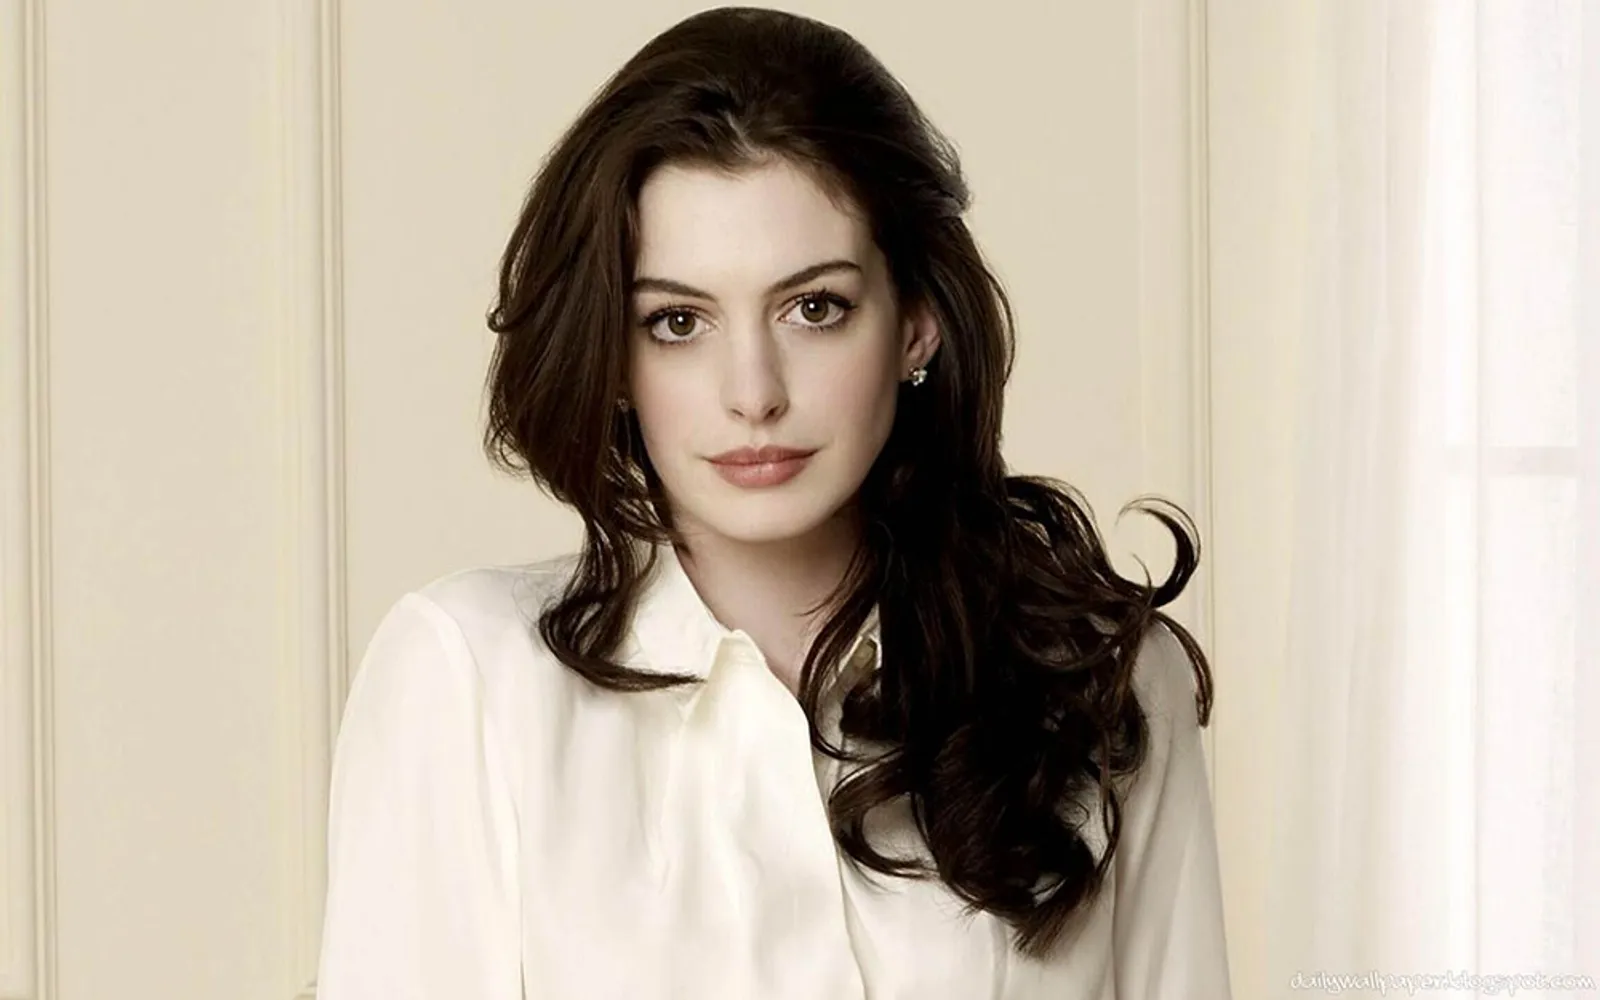 Hindari Stres, Begini Cara Elegan Anne Hathaway Menanggapi Haters